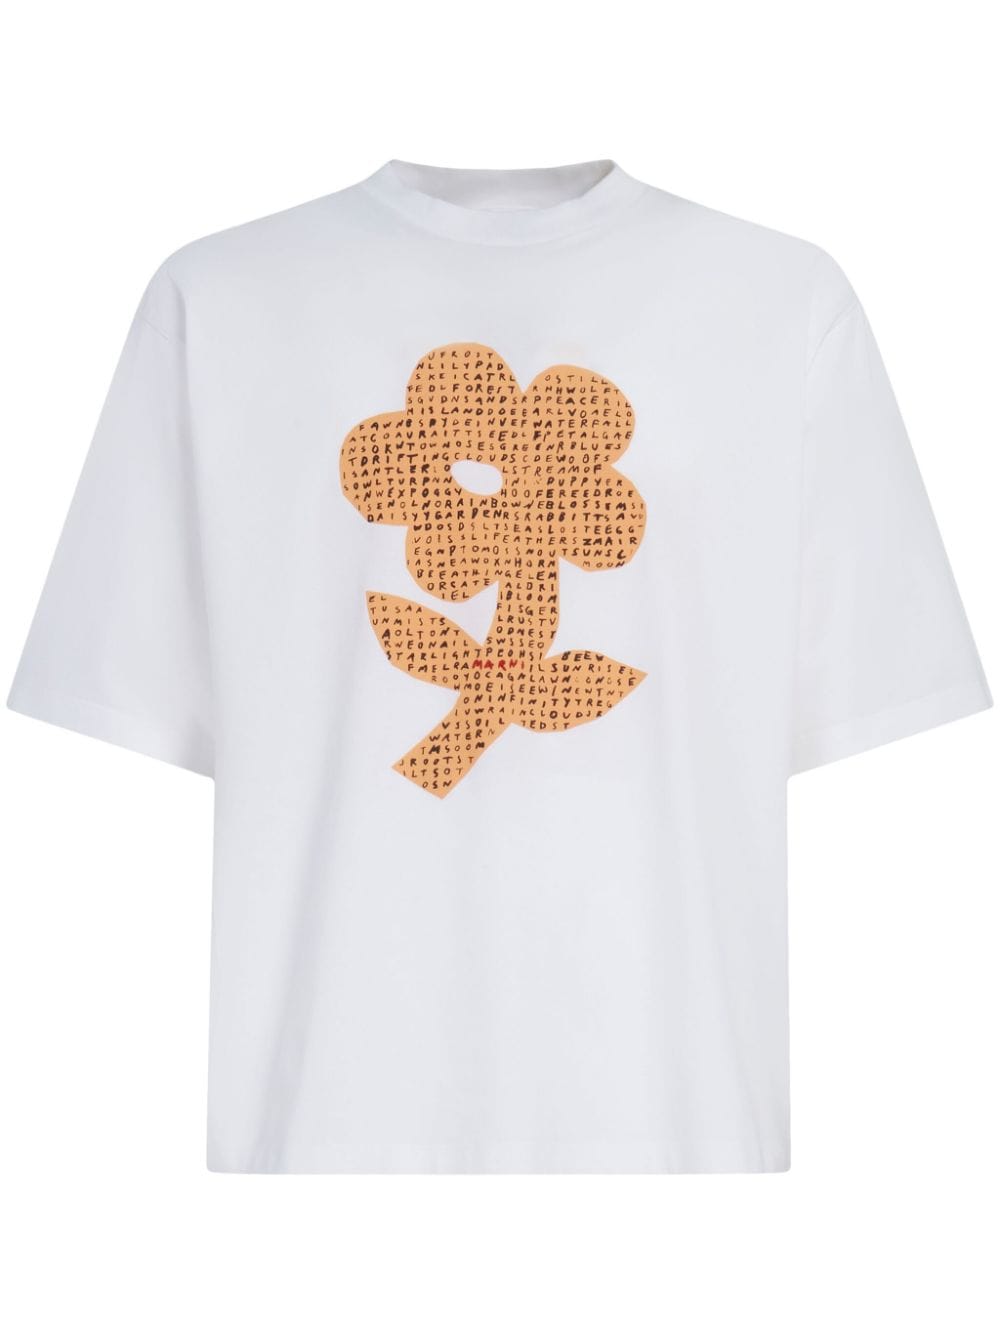 Floral-print cotton T-shirt<BR/><BR/><BR/>